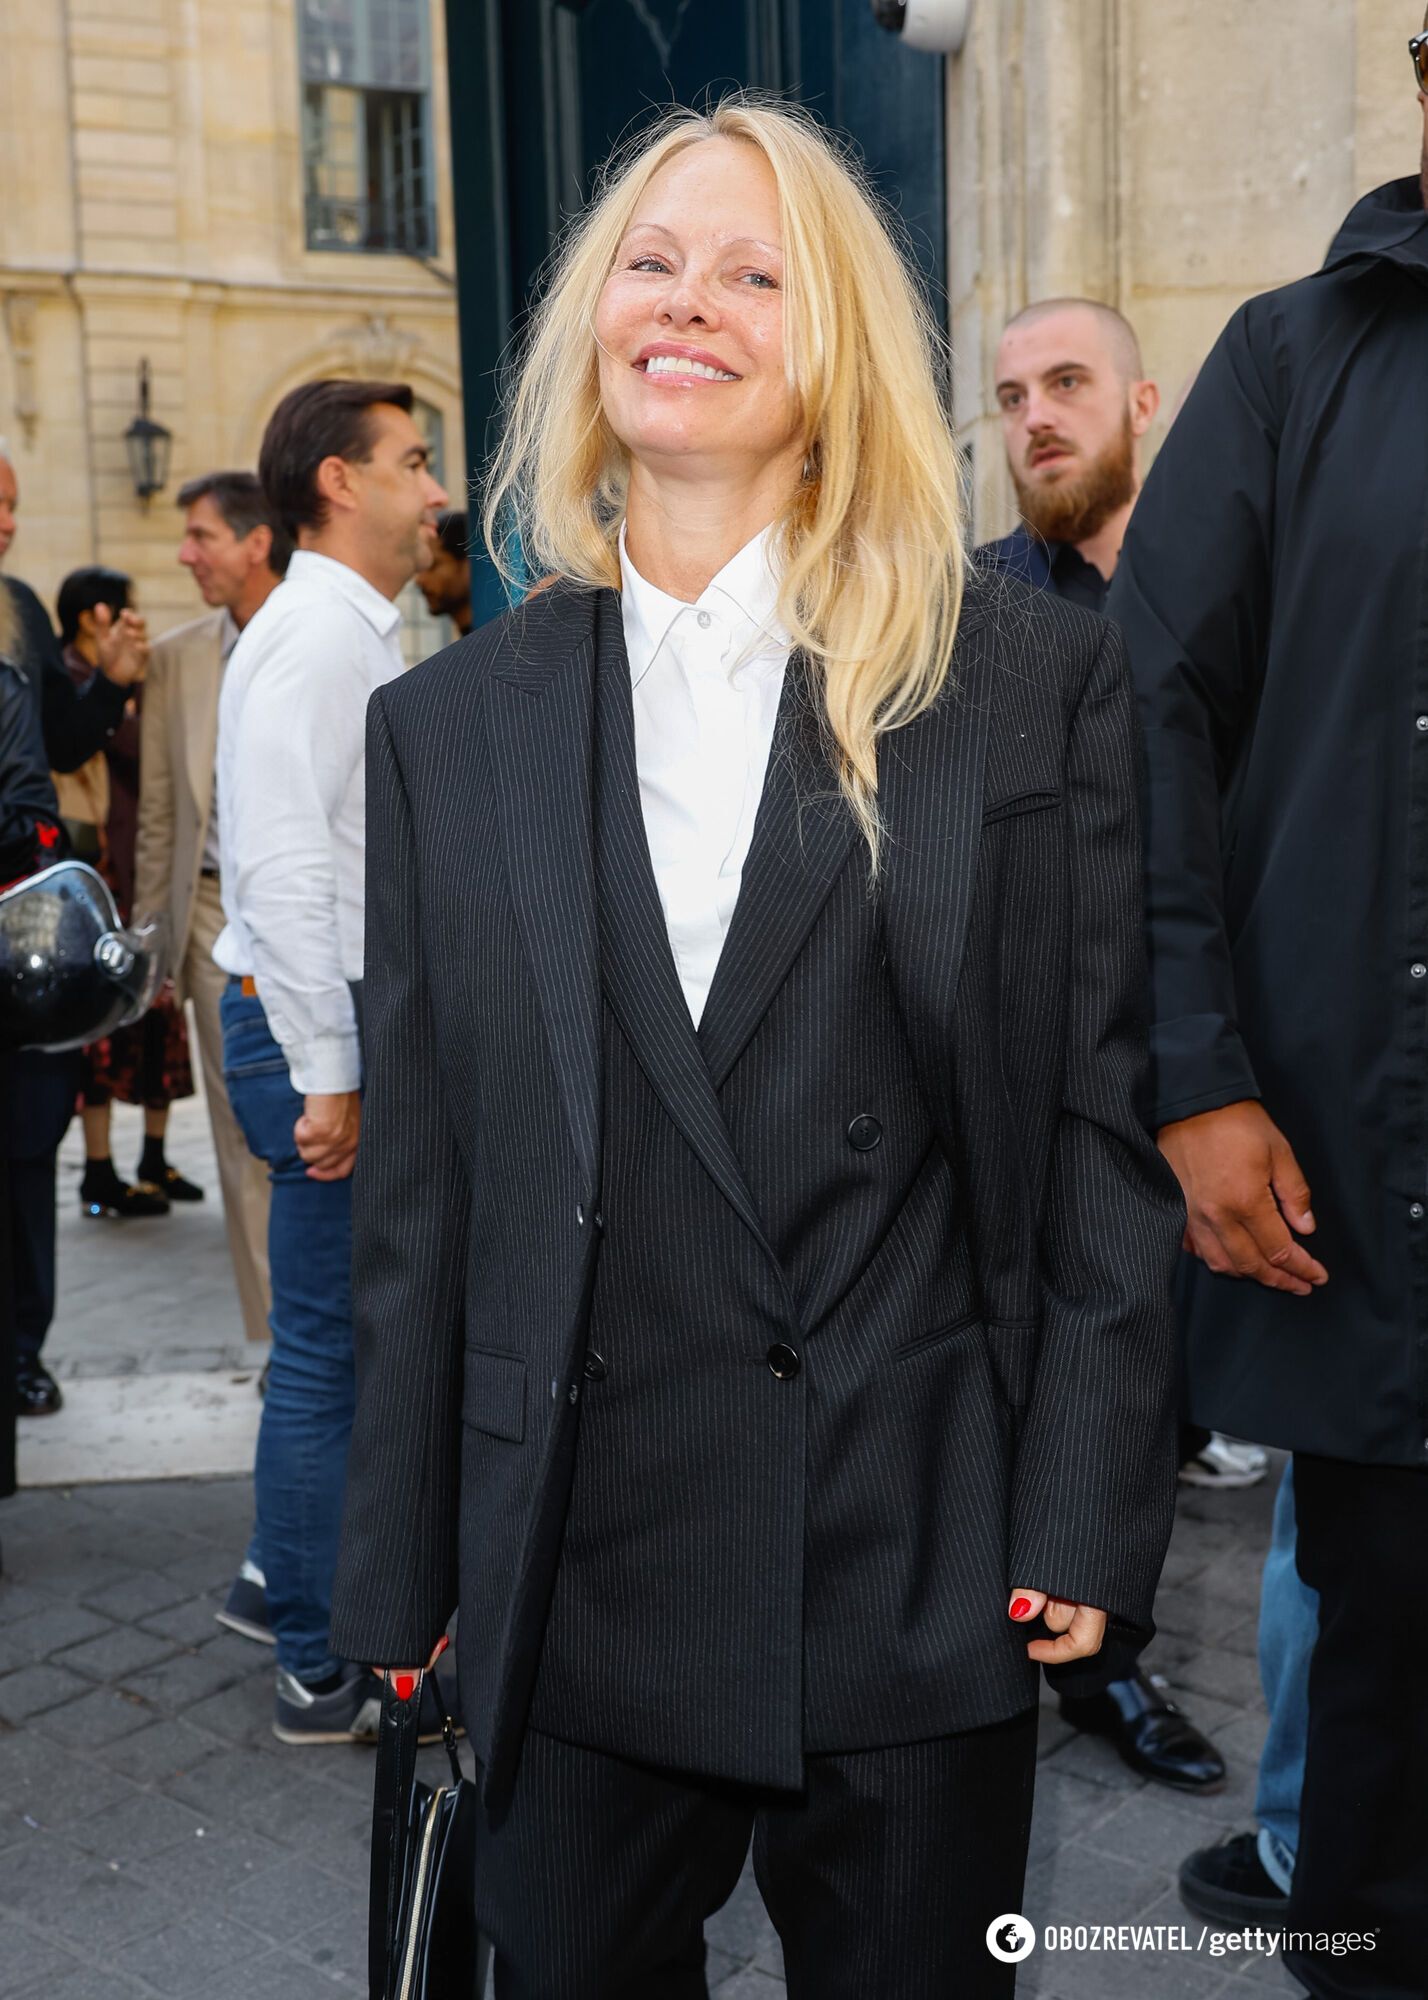 56-летняя Памела Андерсон пришла на Неделю моды в Париже без макияжа и поразила публику. Фото